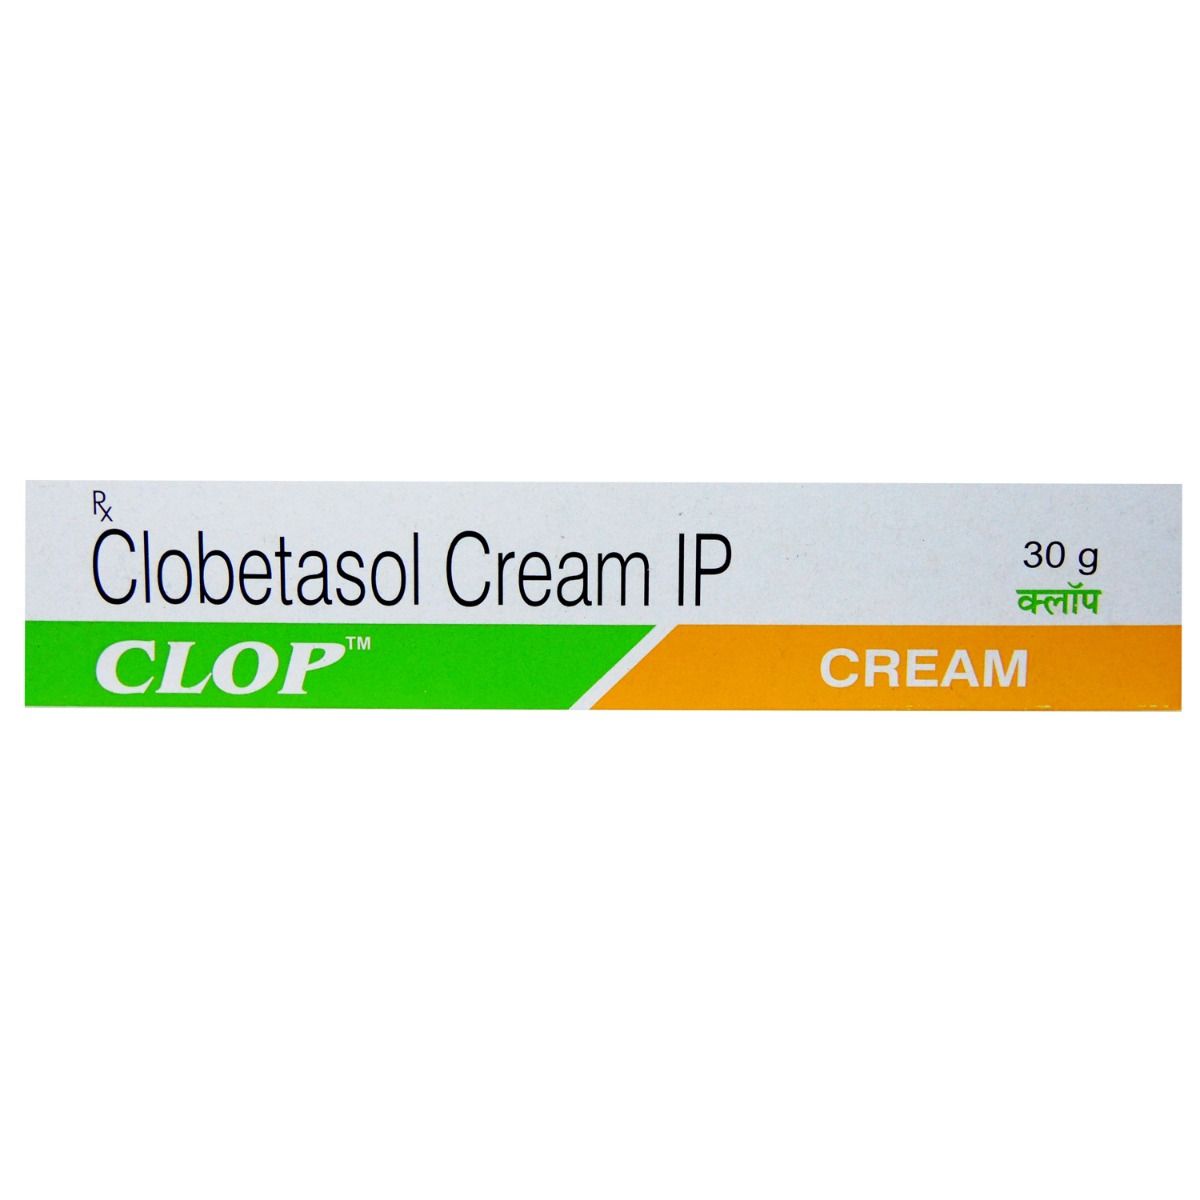 Buy Clop Cream 30 gm Online